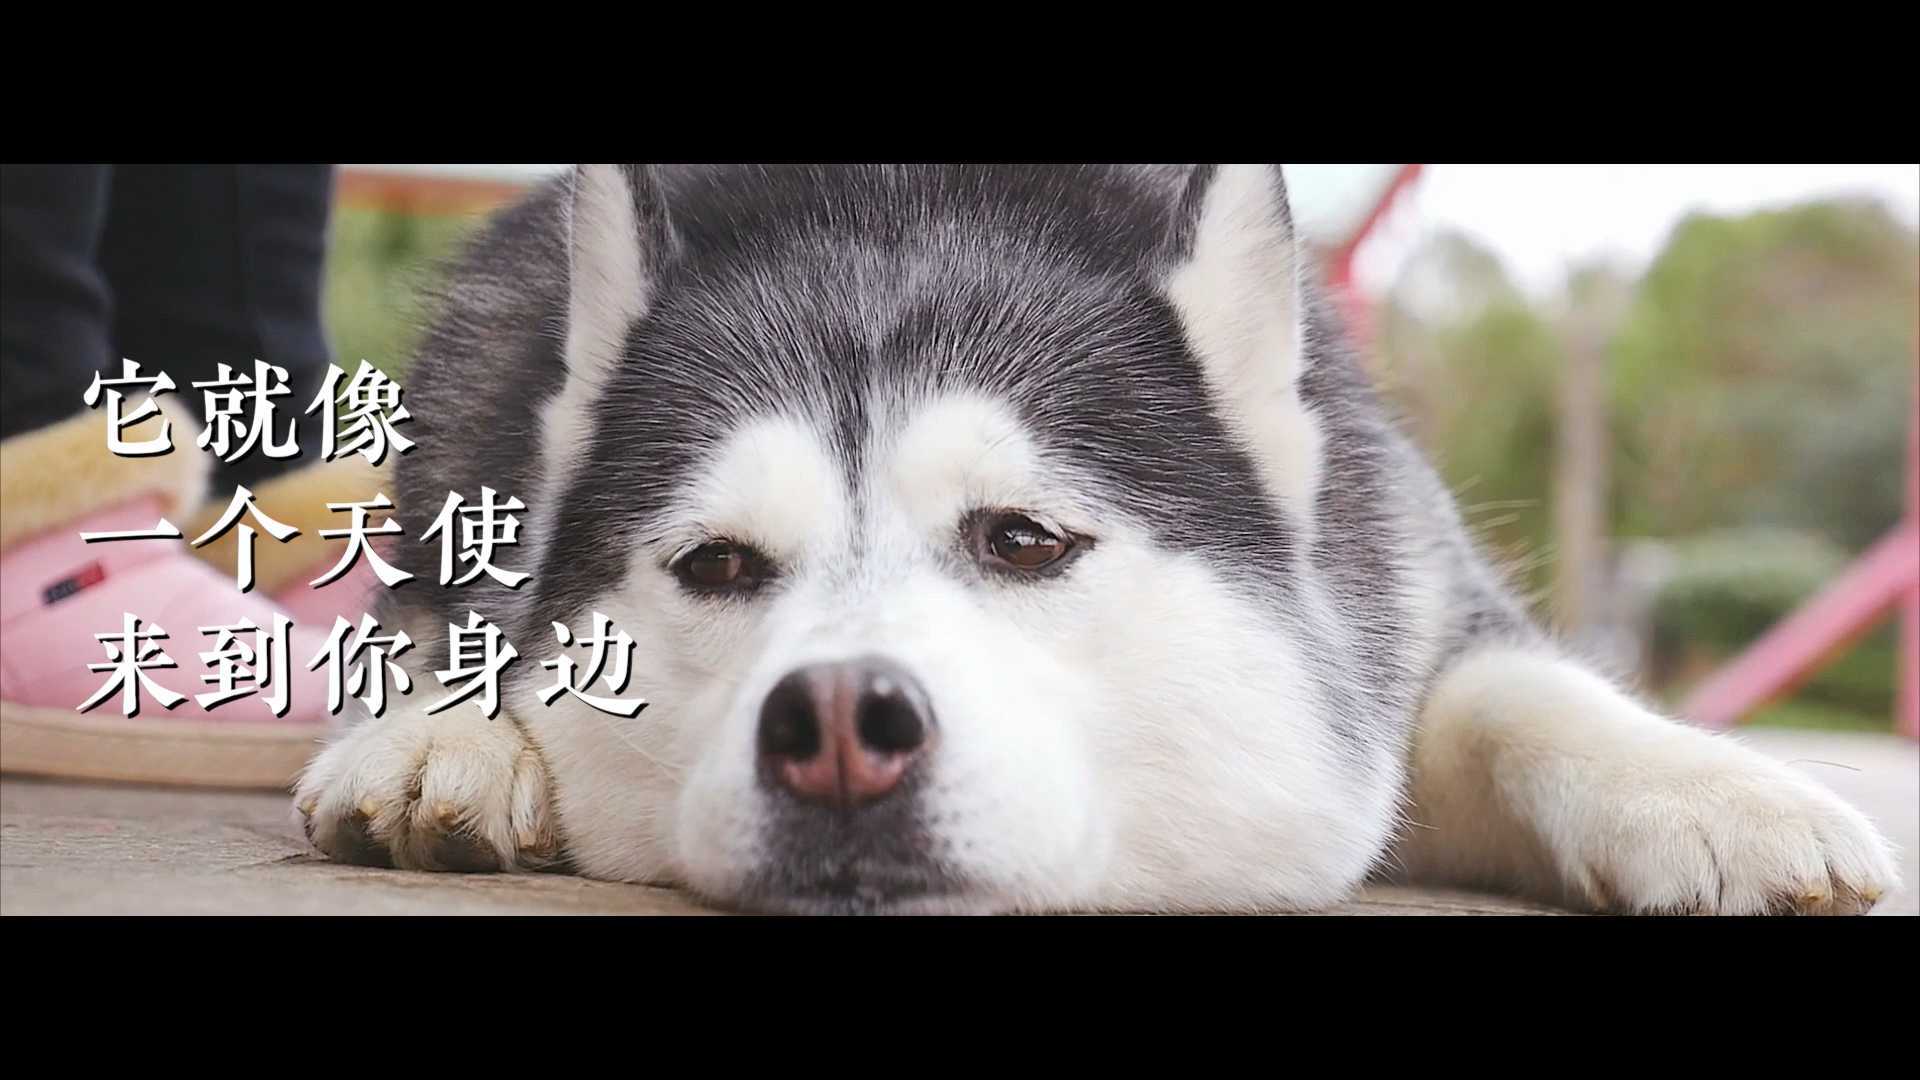 宠物纪录片宣传集锦